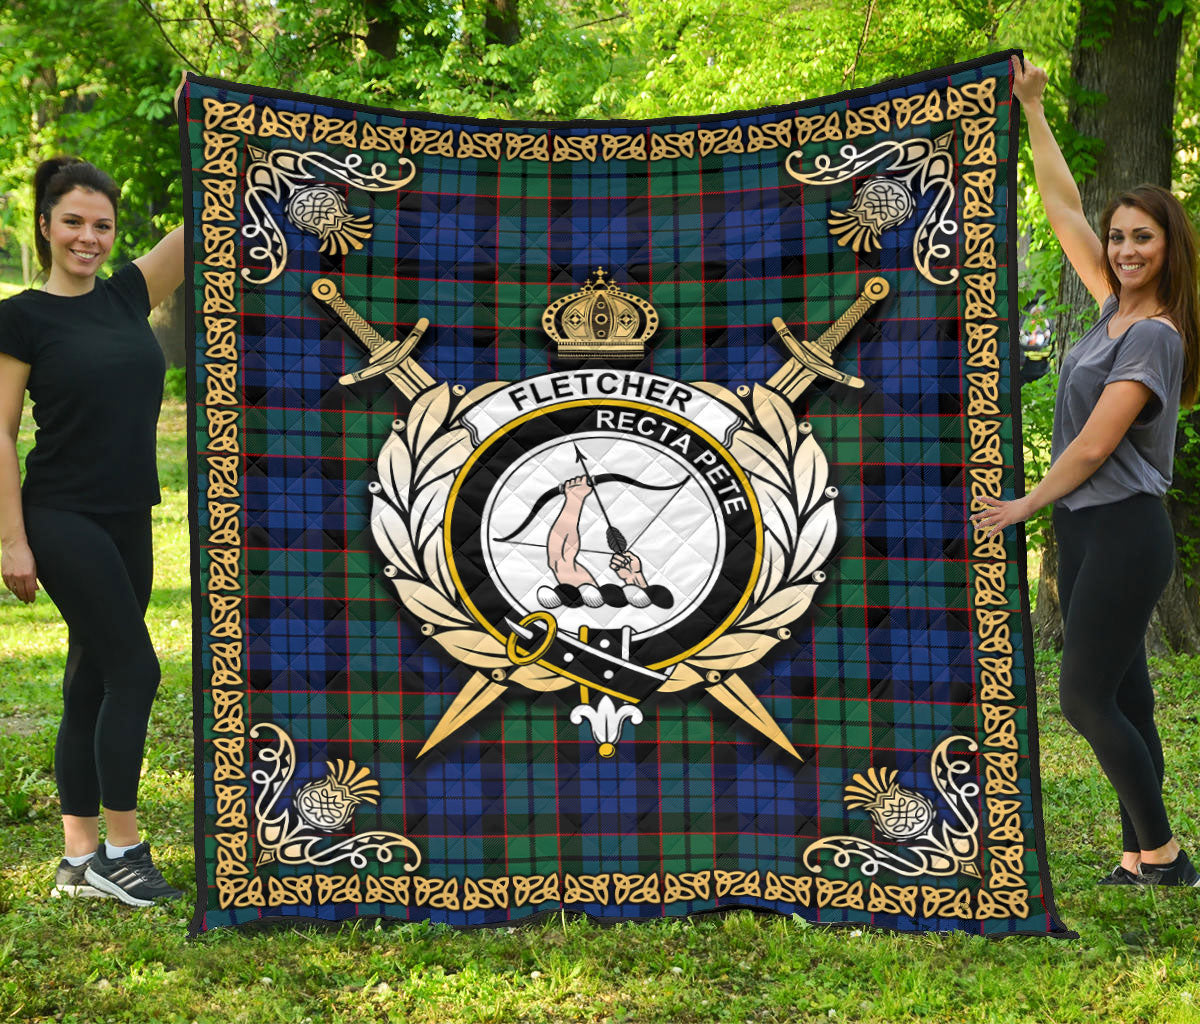 Fletcher Ancient Tartan Crest Premium Quilt - Celtic Thistle Style